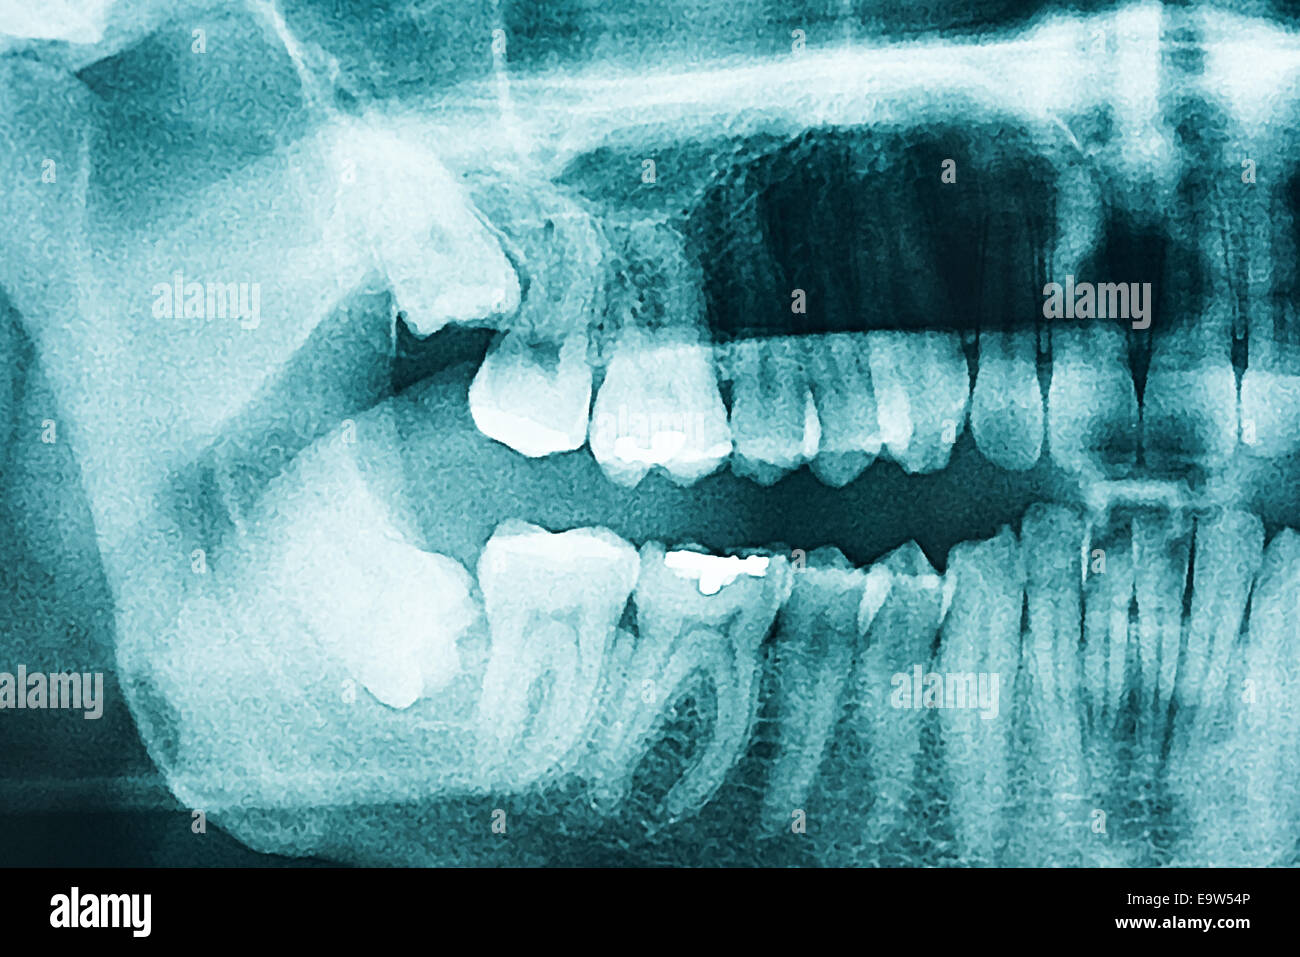 La Radiographie Dentaire panoramique des dents humaines Banque D'Images